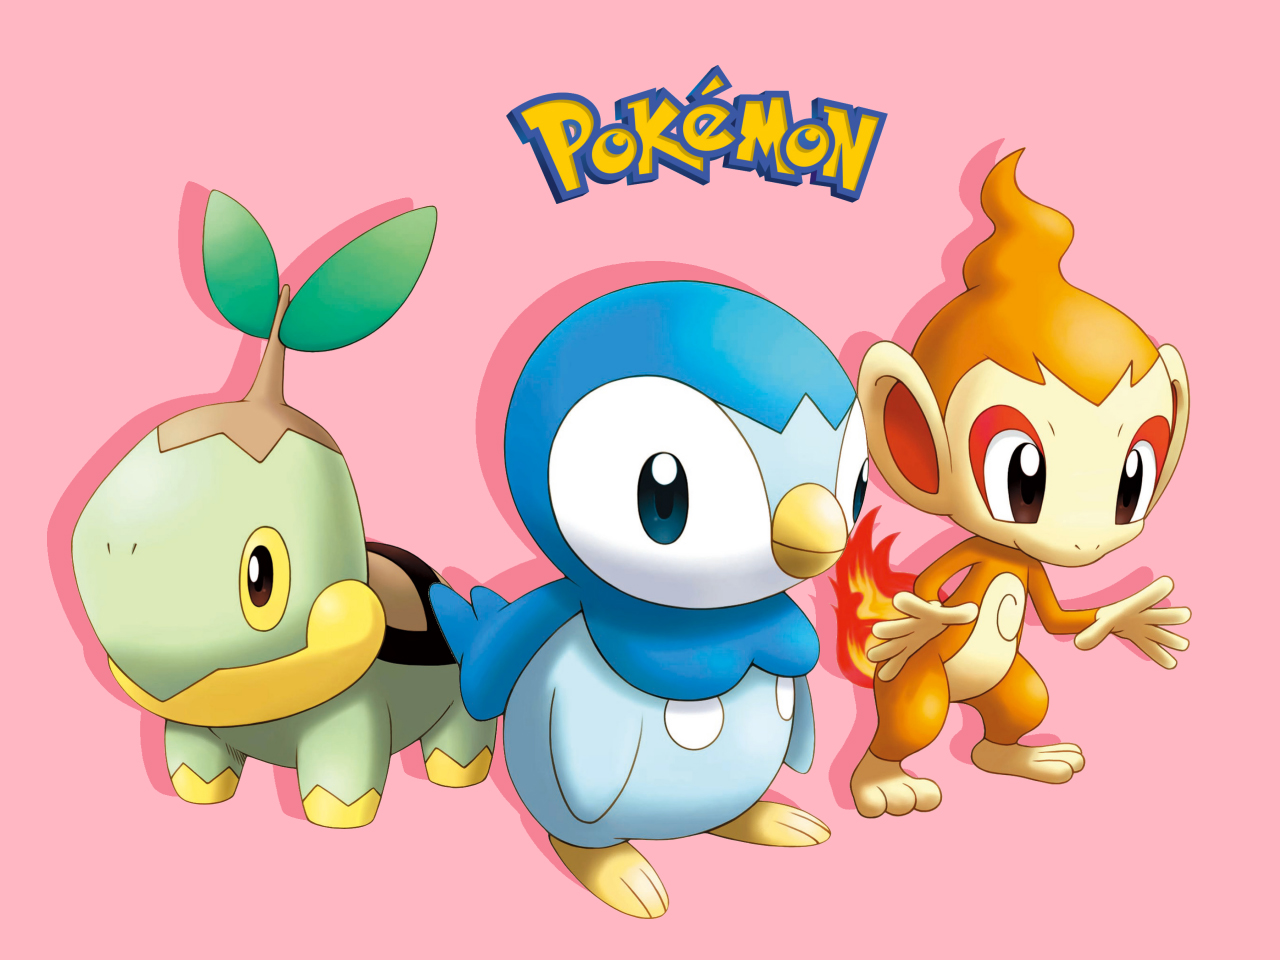 video game, chimchar (pokémon), piplup (pokémon), starter pokemon, turtwig (pokémon), pokémon 8K